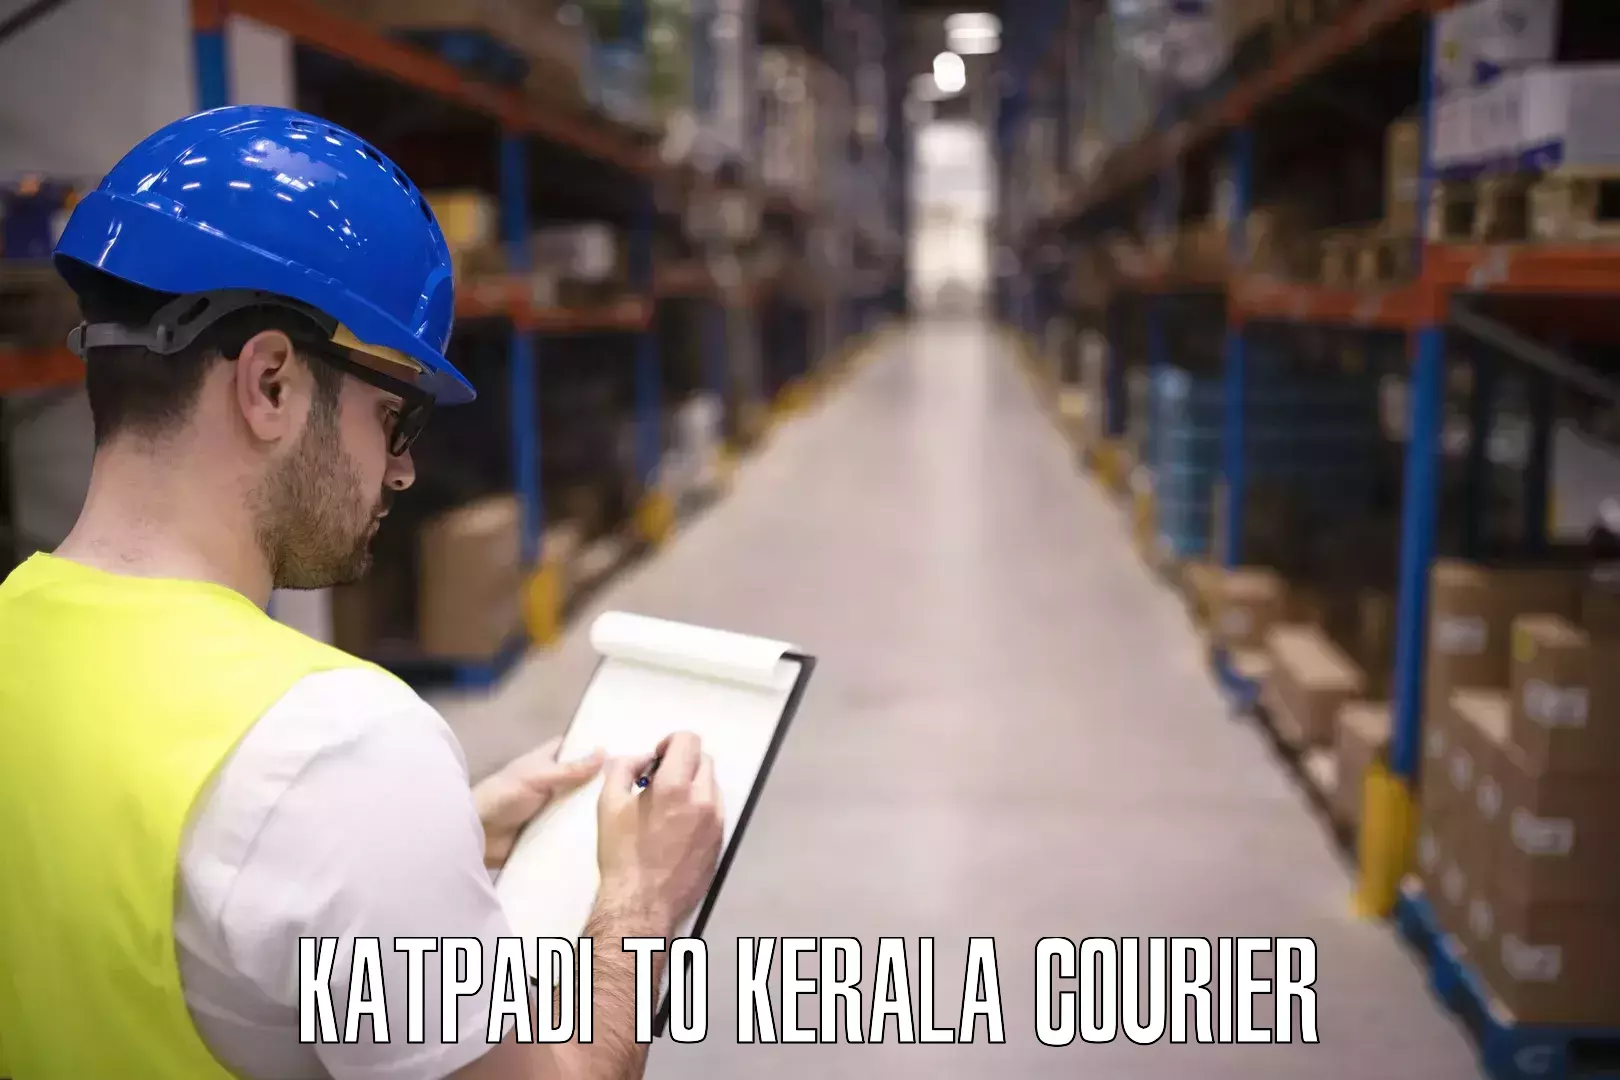 Baggage shipping calculator Katpadi to Pala